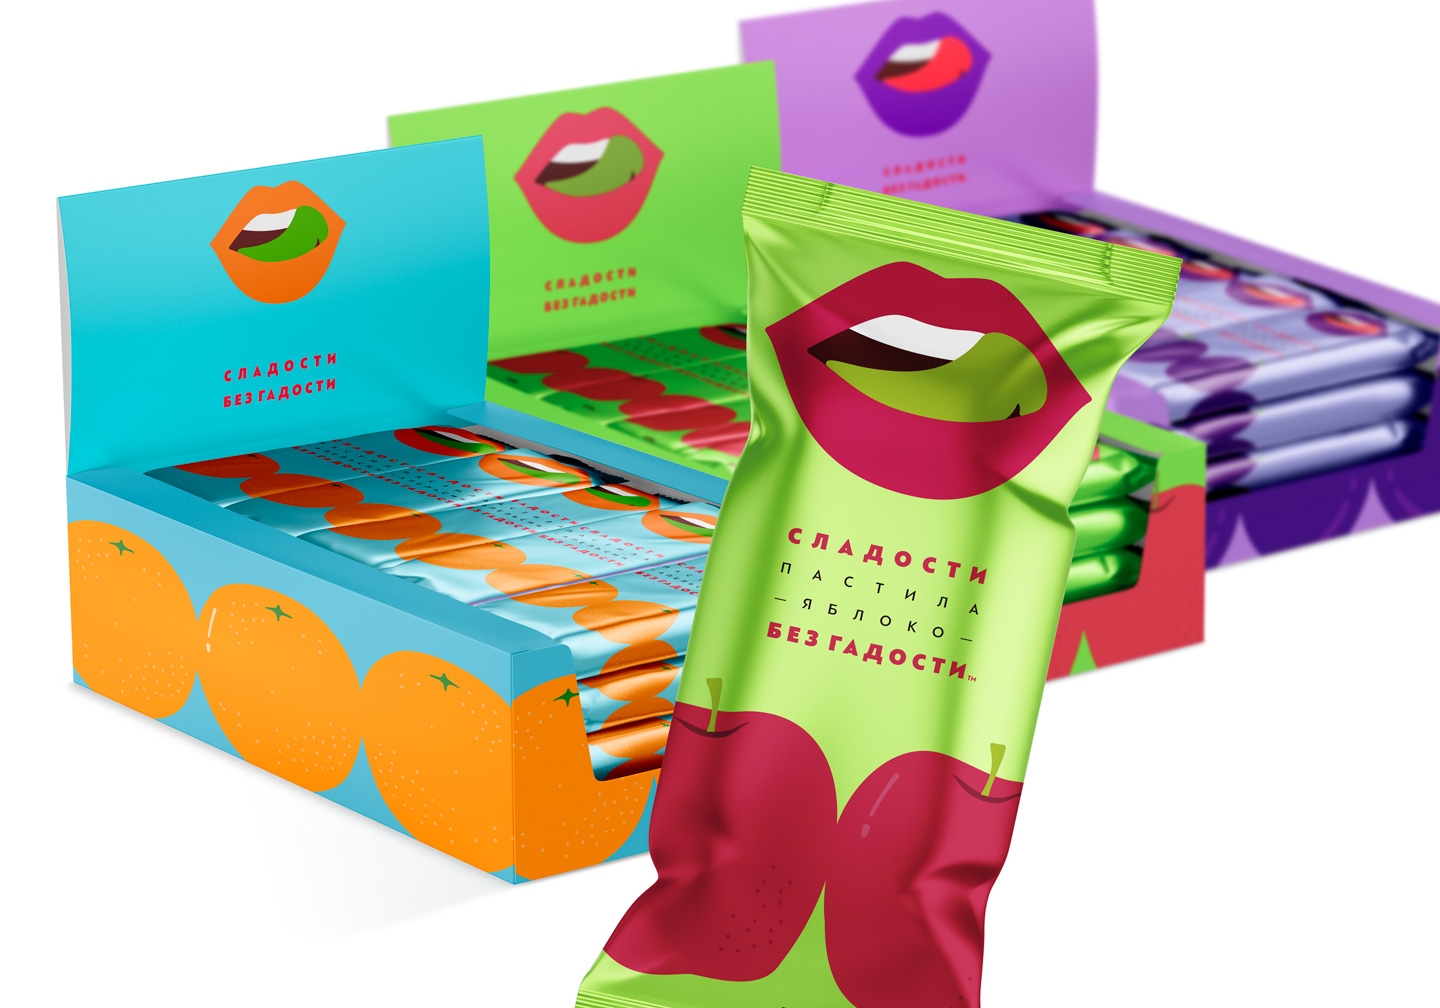 零食糖果水果西安oe欧亿体育app官方下载
品牌策划包装设计VI设计